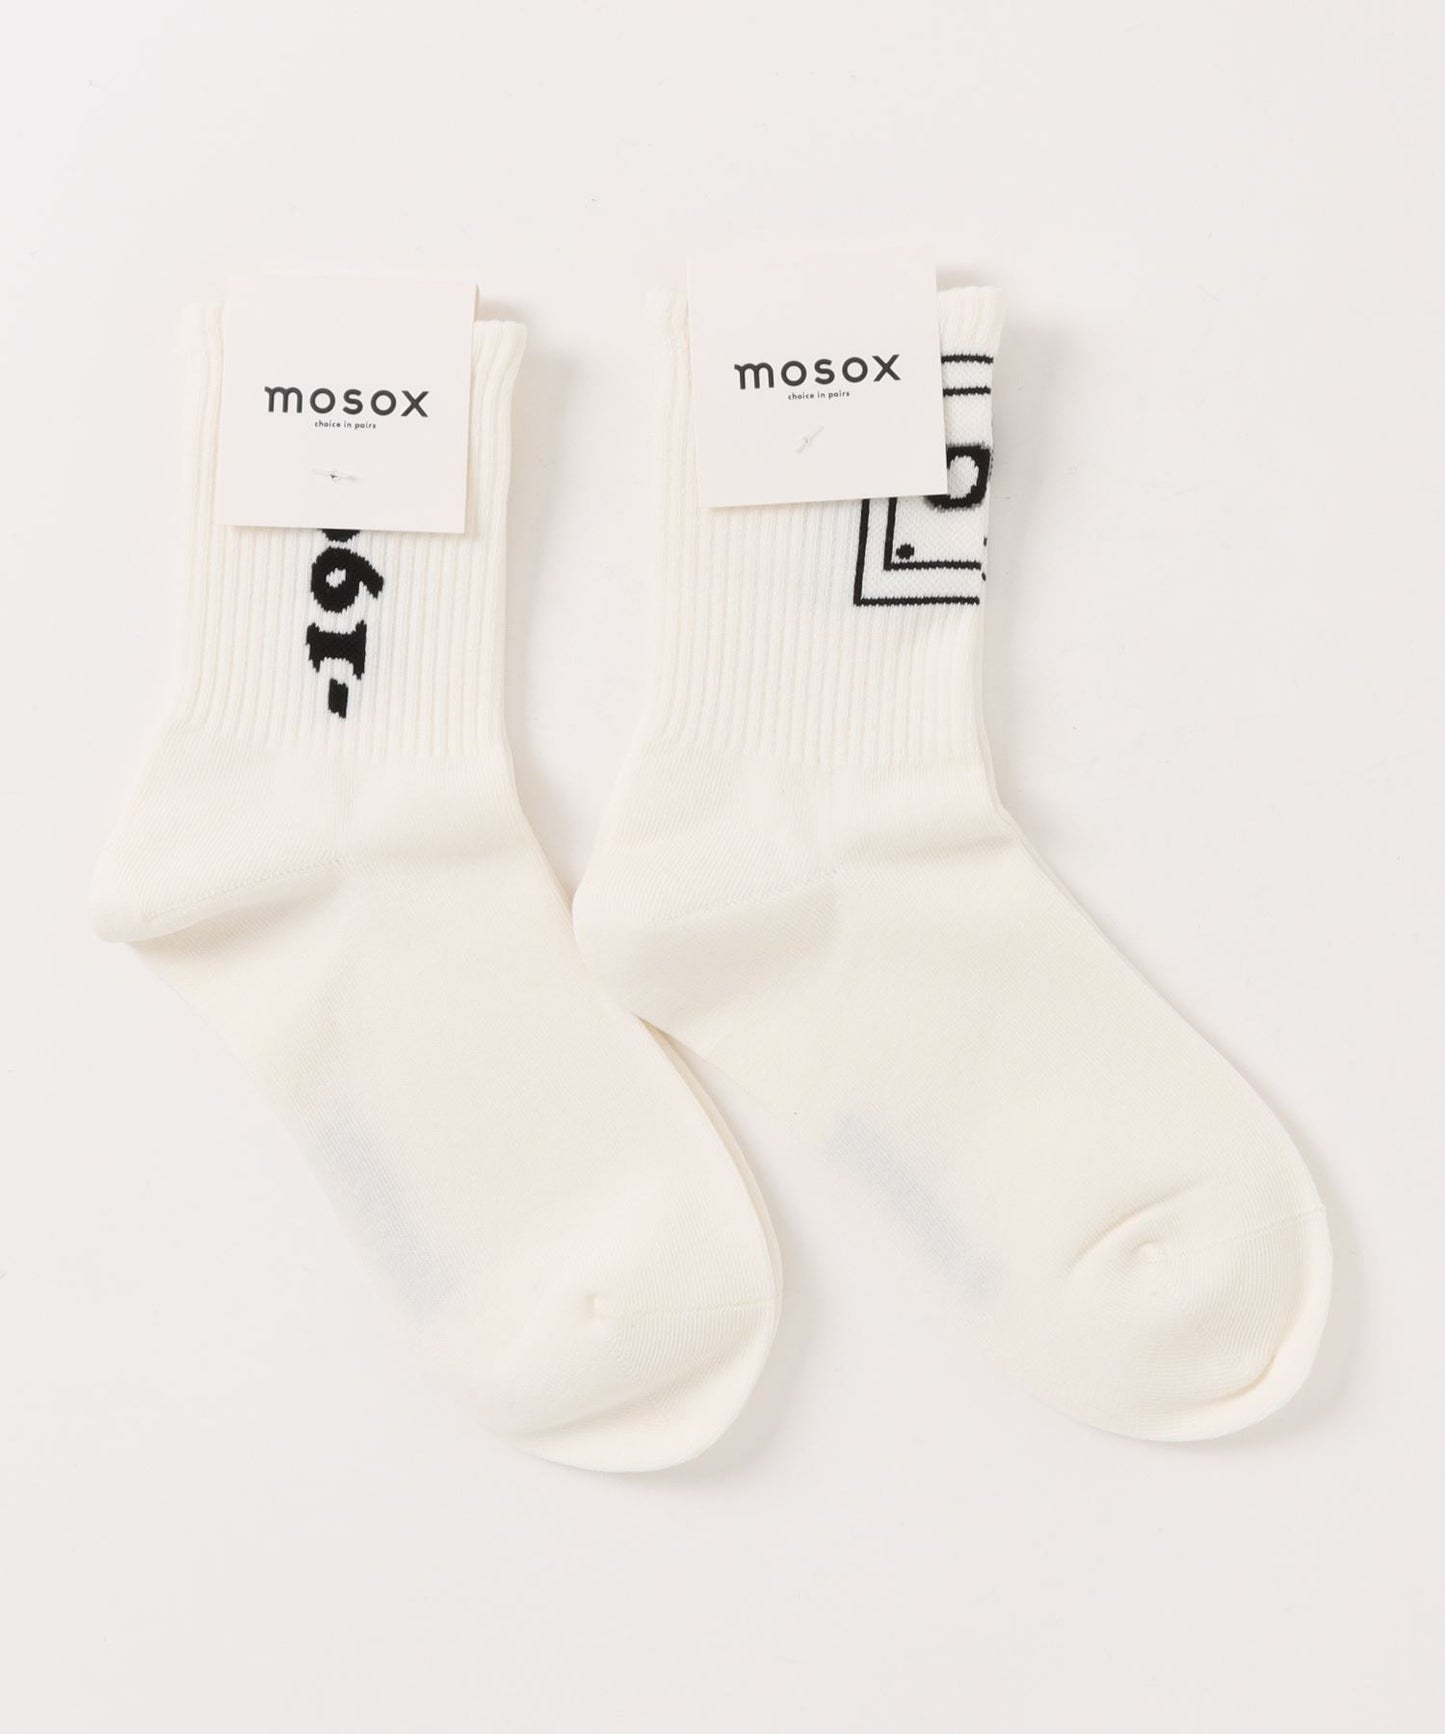 【mosox】ユニセックス靴下2点セット